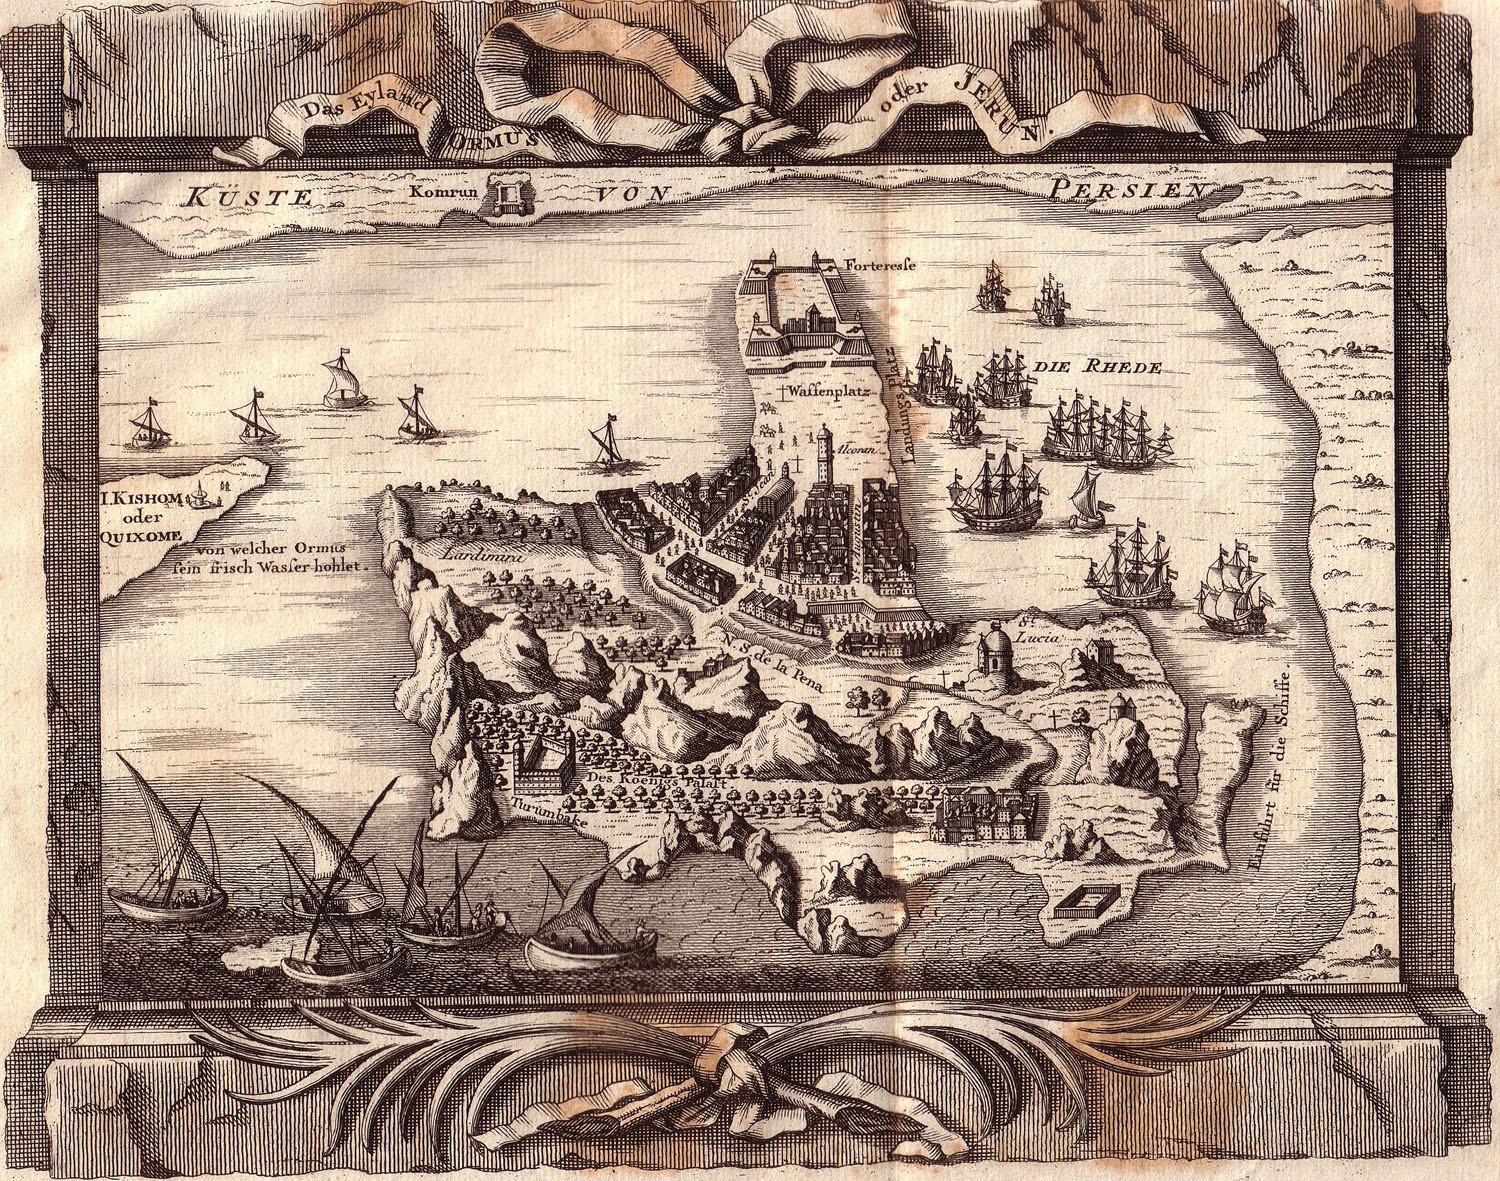 Map of Hormoz Island and New Hormoz City in Johann Caspar Arkstee and Henricus Merkus' Allgemeine Historie der Reisen zu Wasser und Lande, oder Sammlung aller Reisebeschreibungen, Leipzig 1747